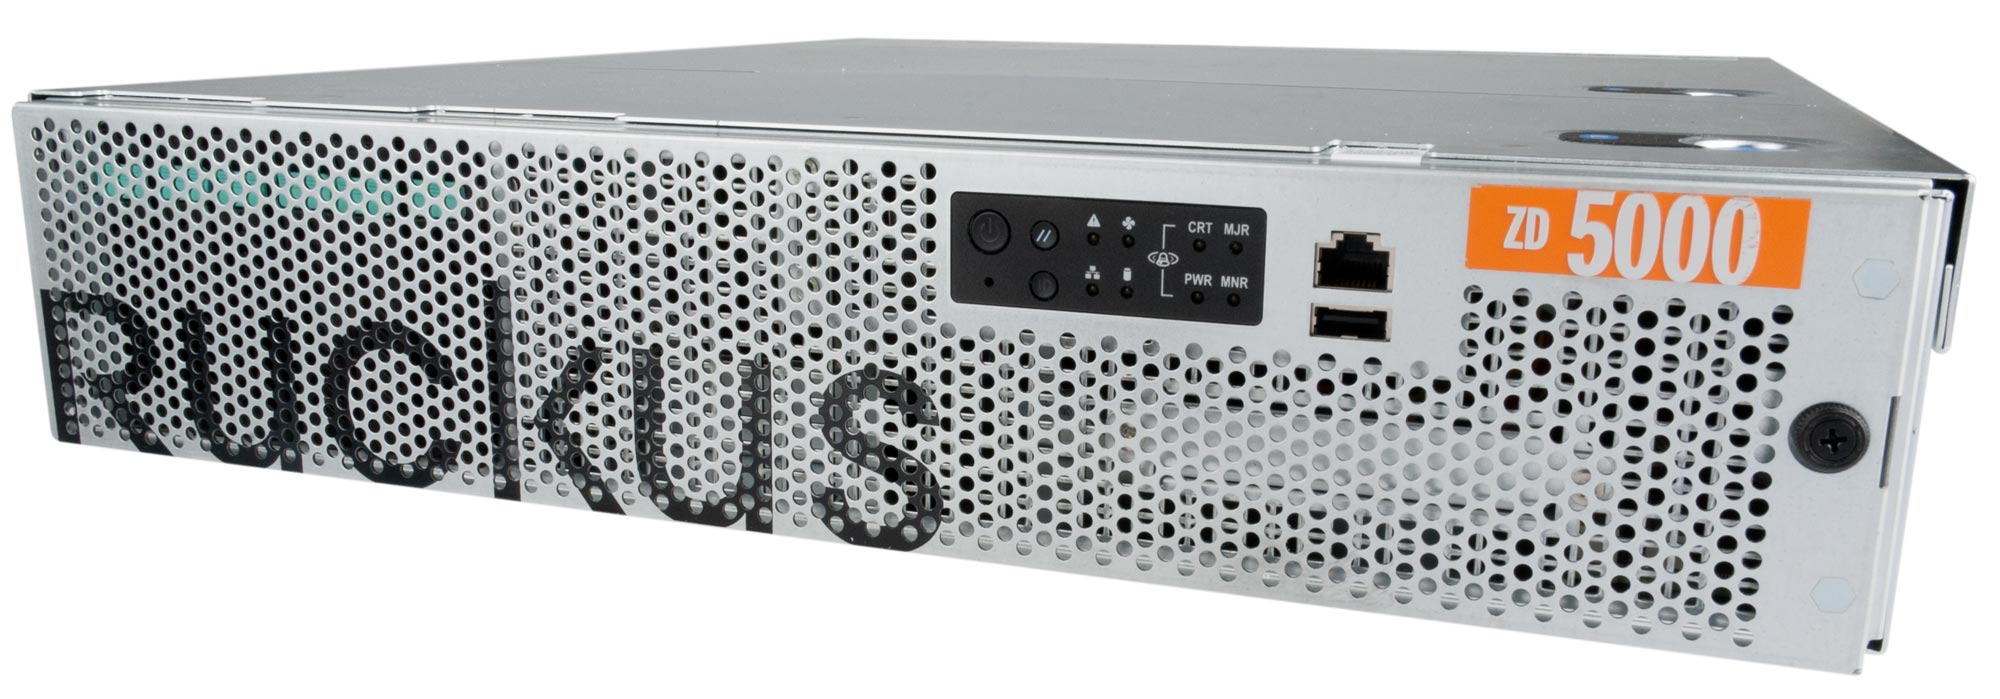 Ruckus Wireless ZoneDirector 5000 Managed network switch L3 Gigabit Ethernet (10/100/1000) Grey